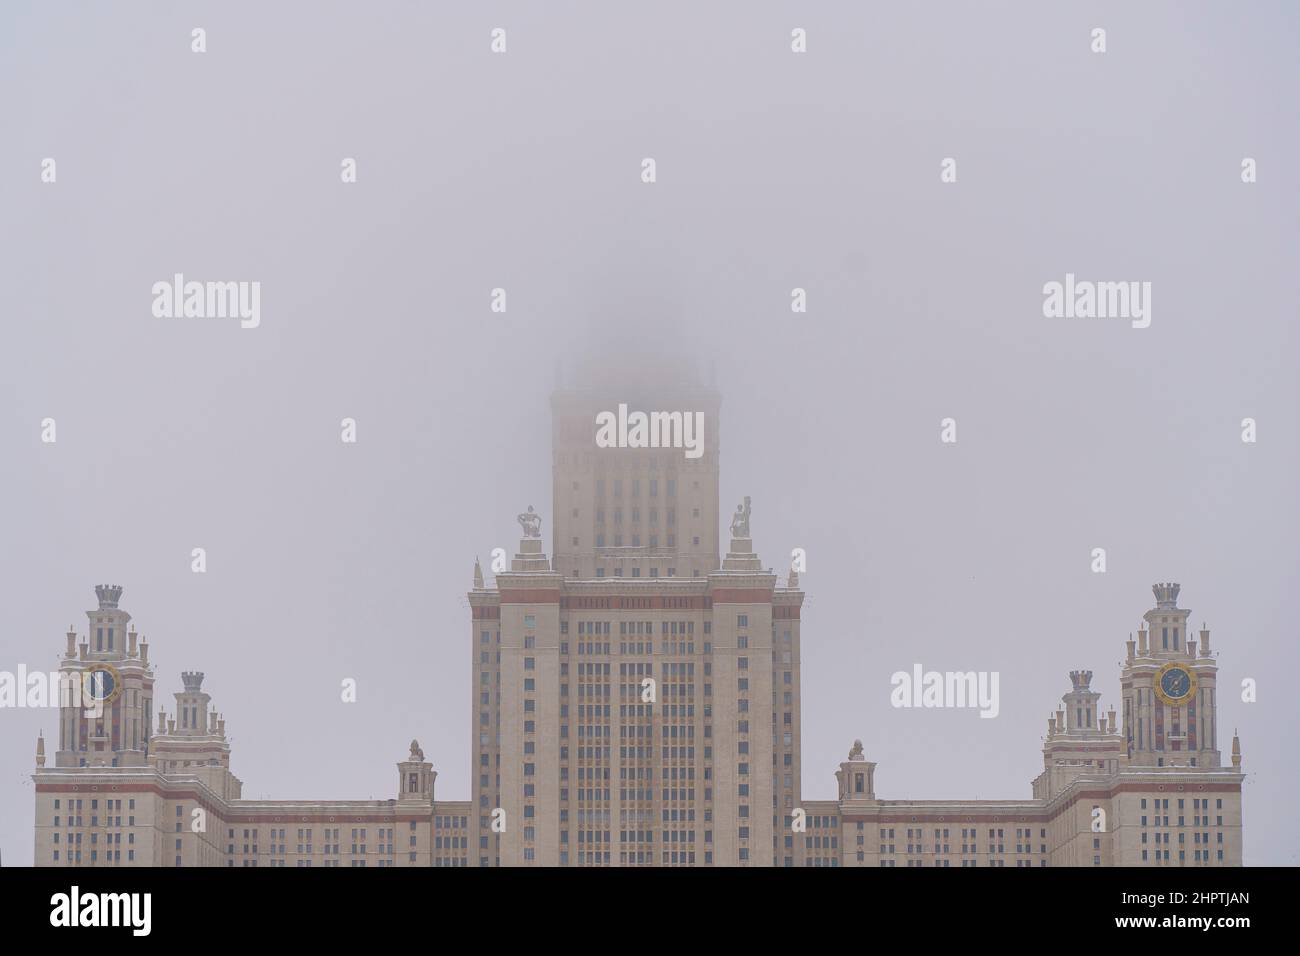 La Universidad Estatal de Moscú Lomonosov en invierno. Educación en Rusia, arquitectura estalinista, concepto estilo imperio soviético. Fotografías de alta calidad Foto de stock